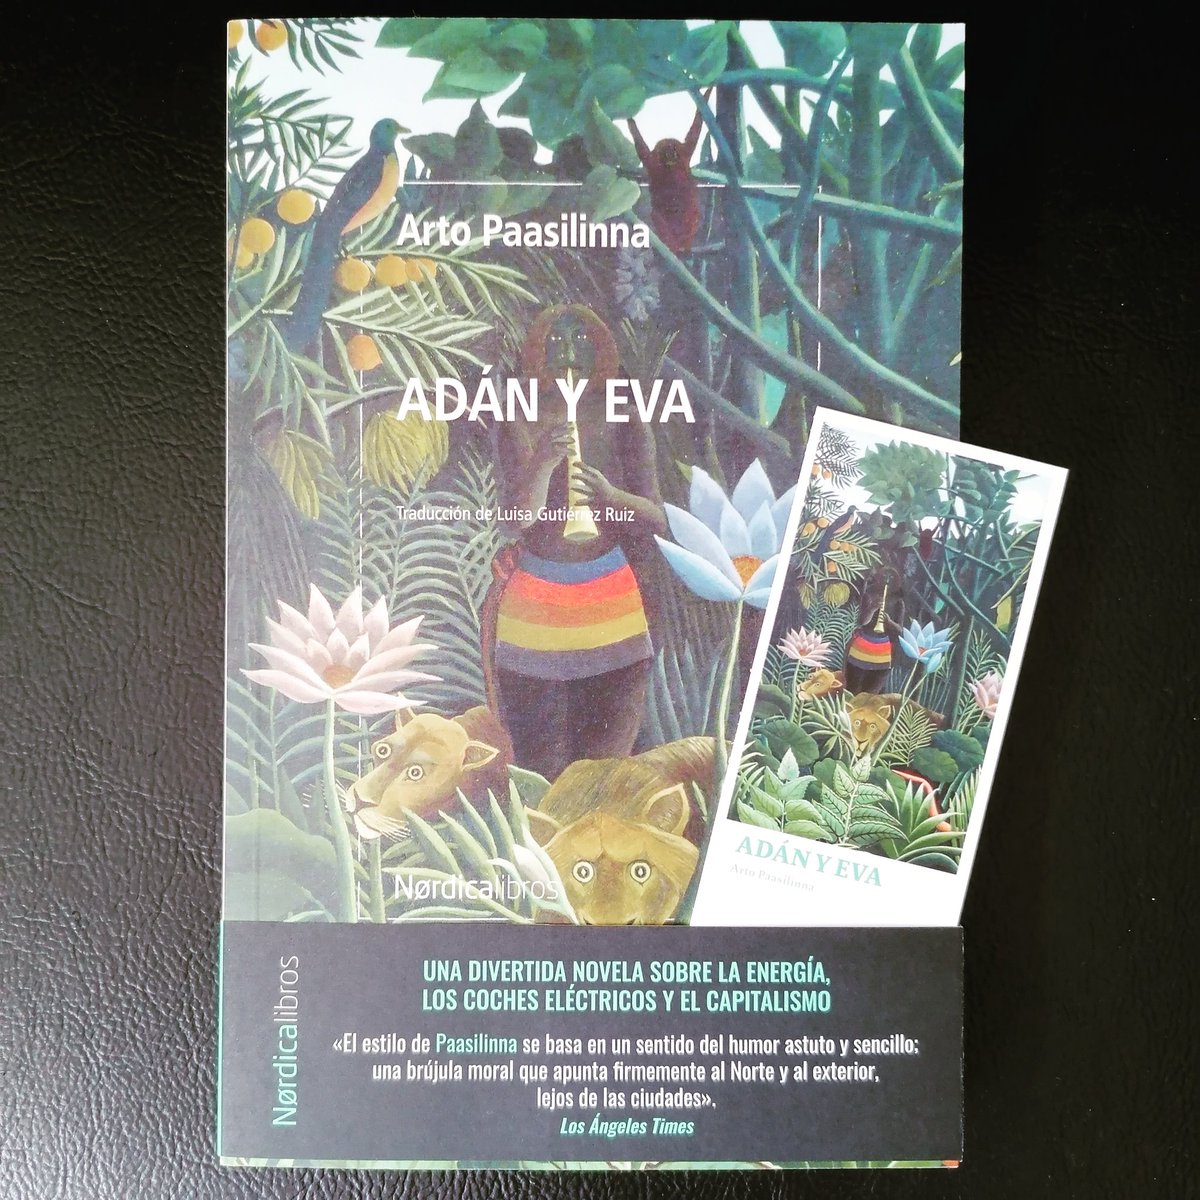 'Adán y Eva', de Arto Paasilinna.
Libros a la maleta. 📖⛱️🌞
@nordica_libros
#librosparaelverano #librosalamaleta #artopaasilinna